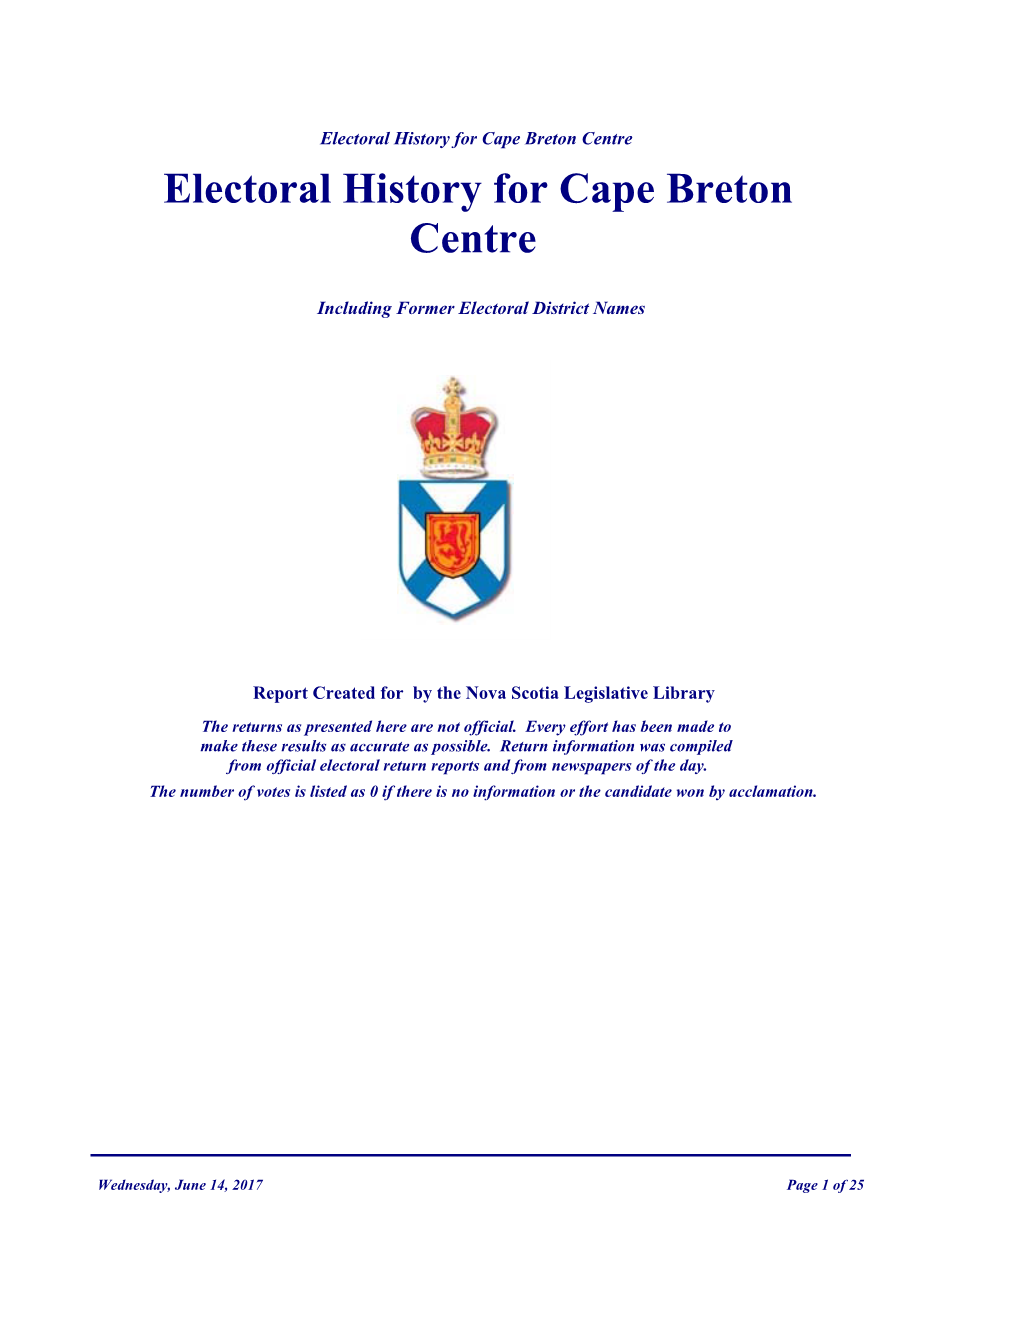 Electoral History for Cape Breton Centre Electoral History for Cape Breton Centre